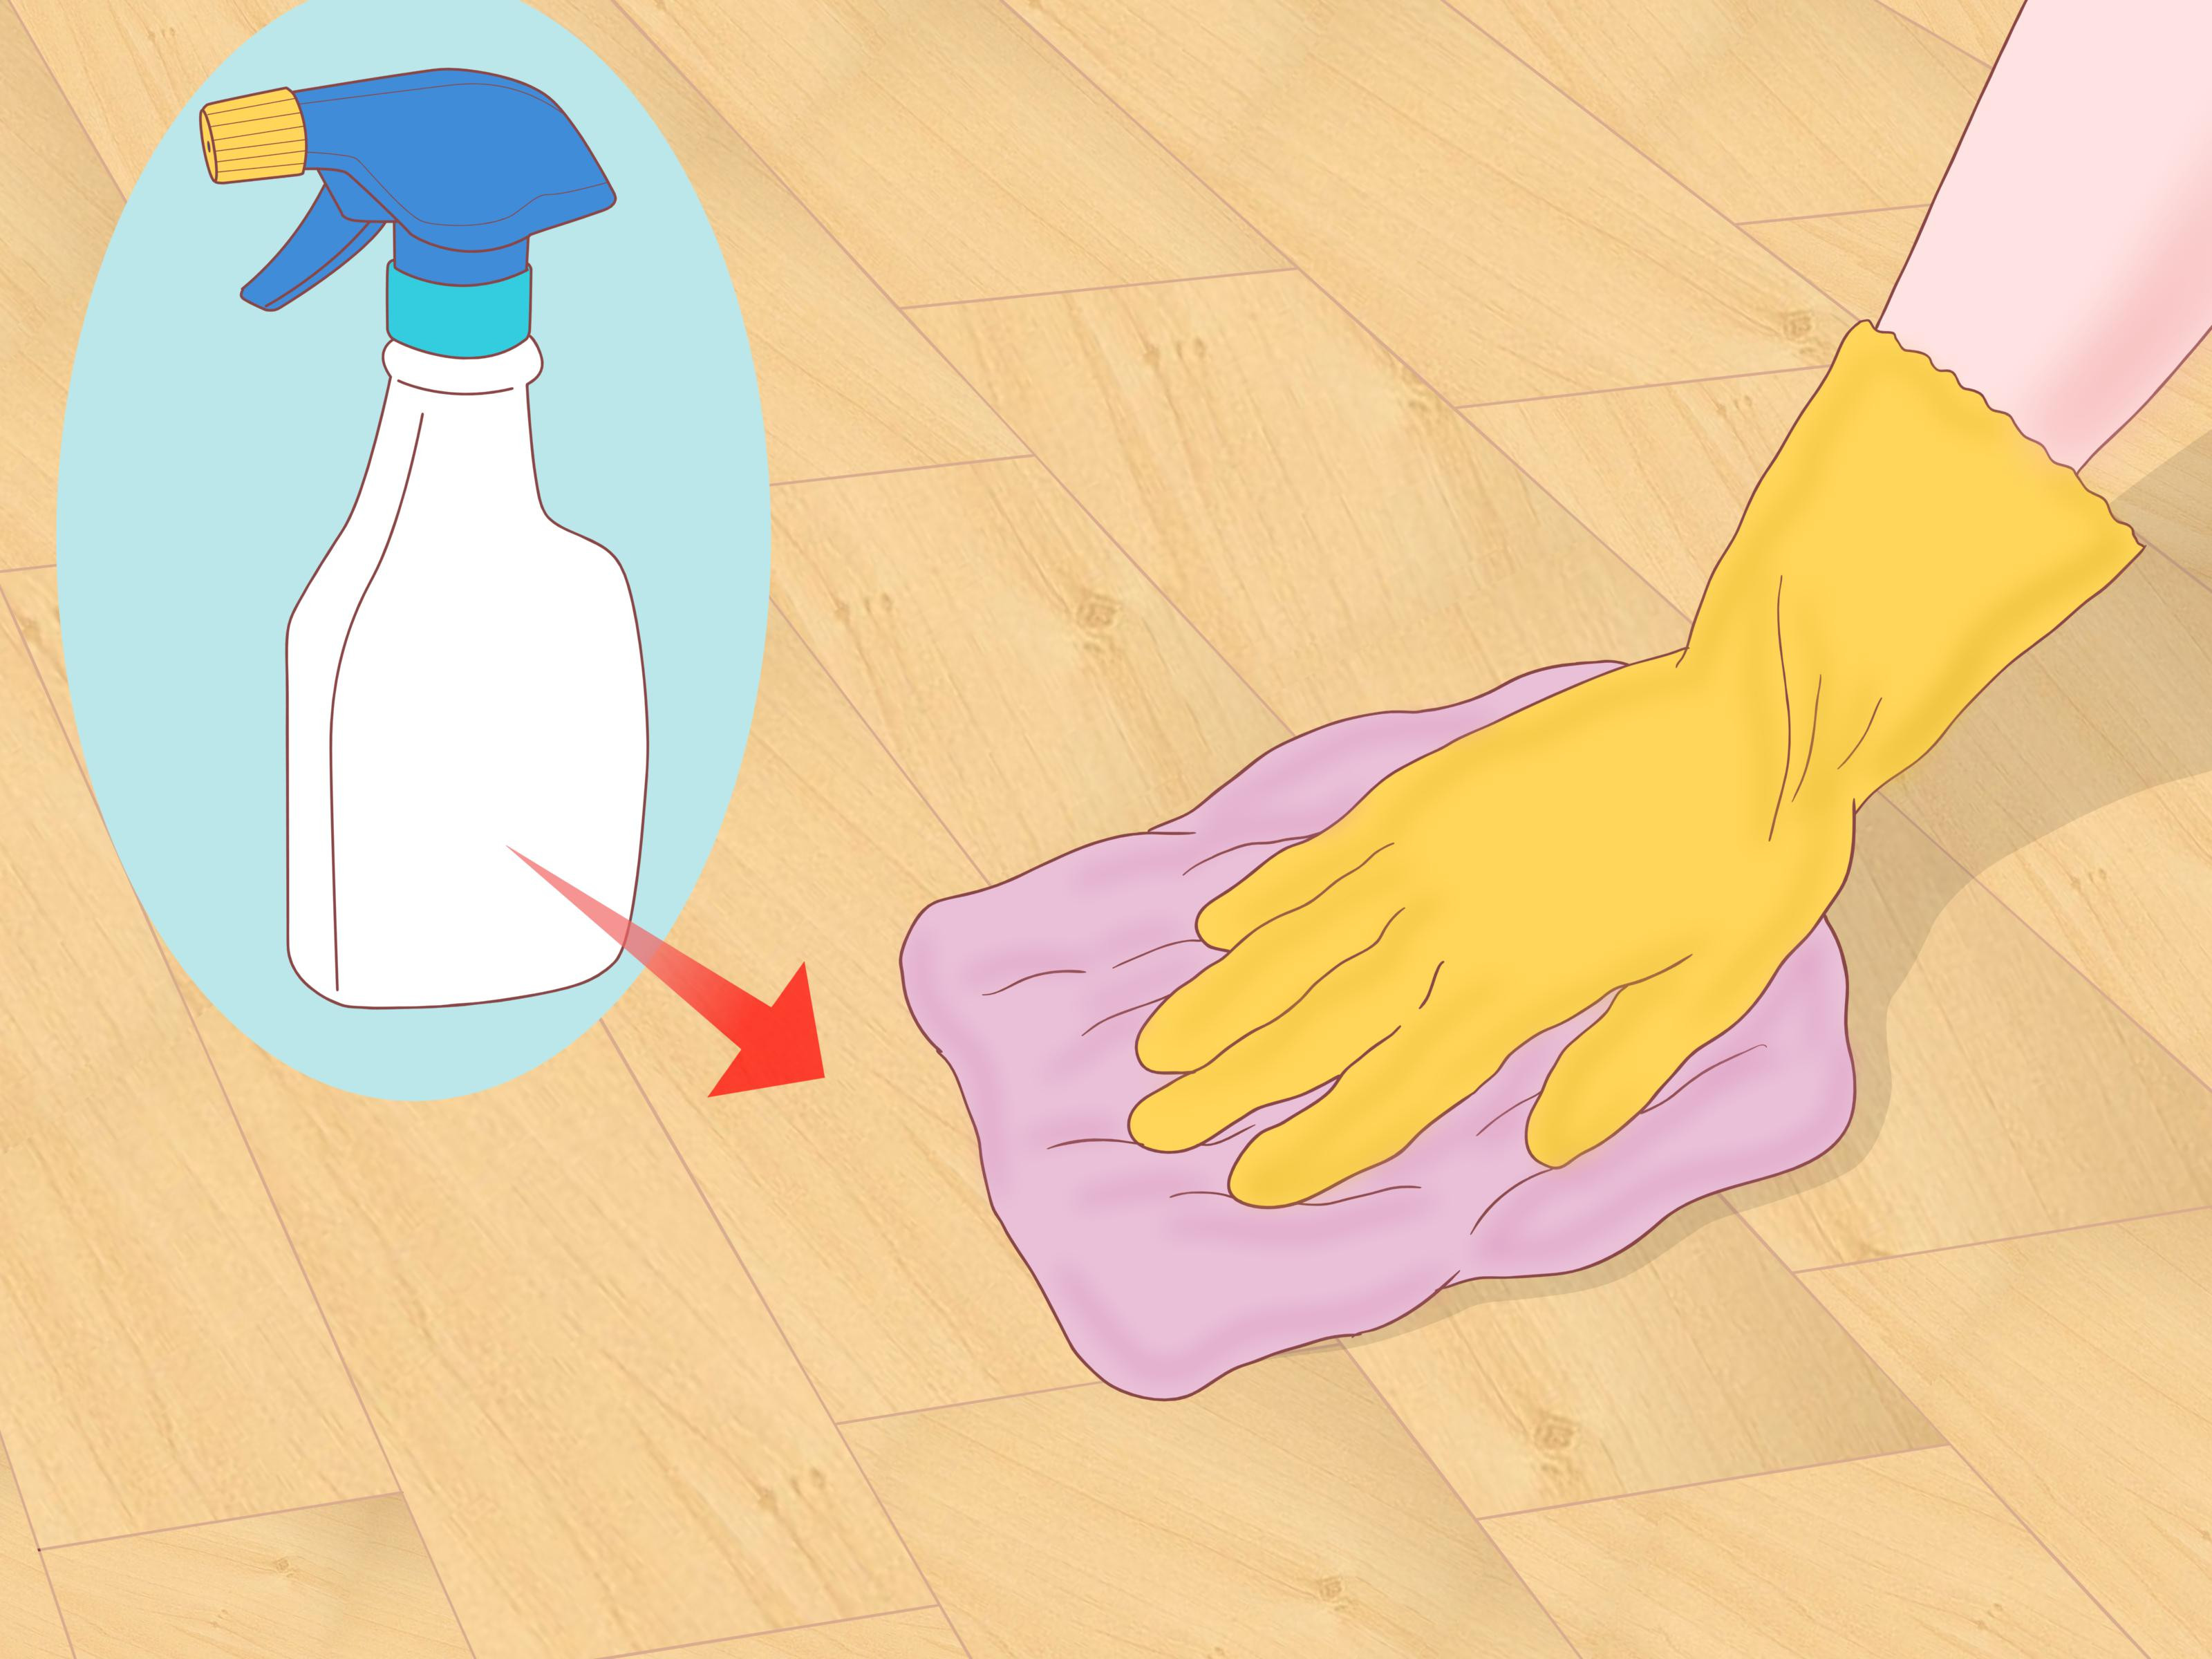 bona x hardwood floor cleaner reviews of 3 ways to clean parquet floors wikihow for clean parquet floors step 12